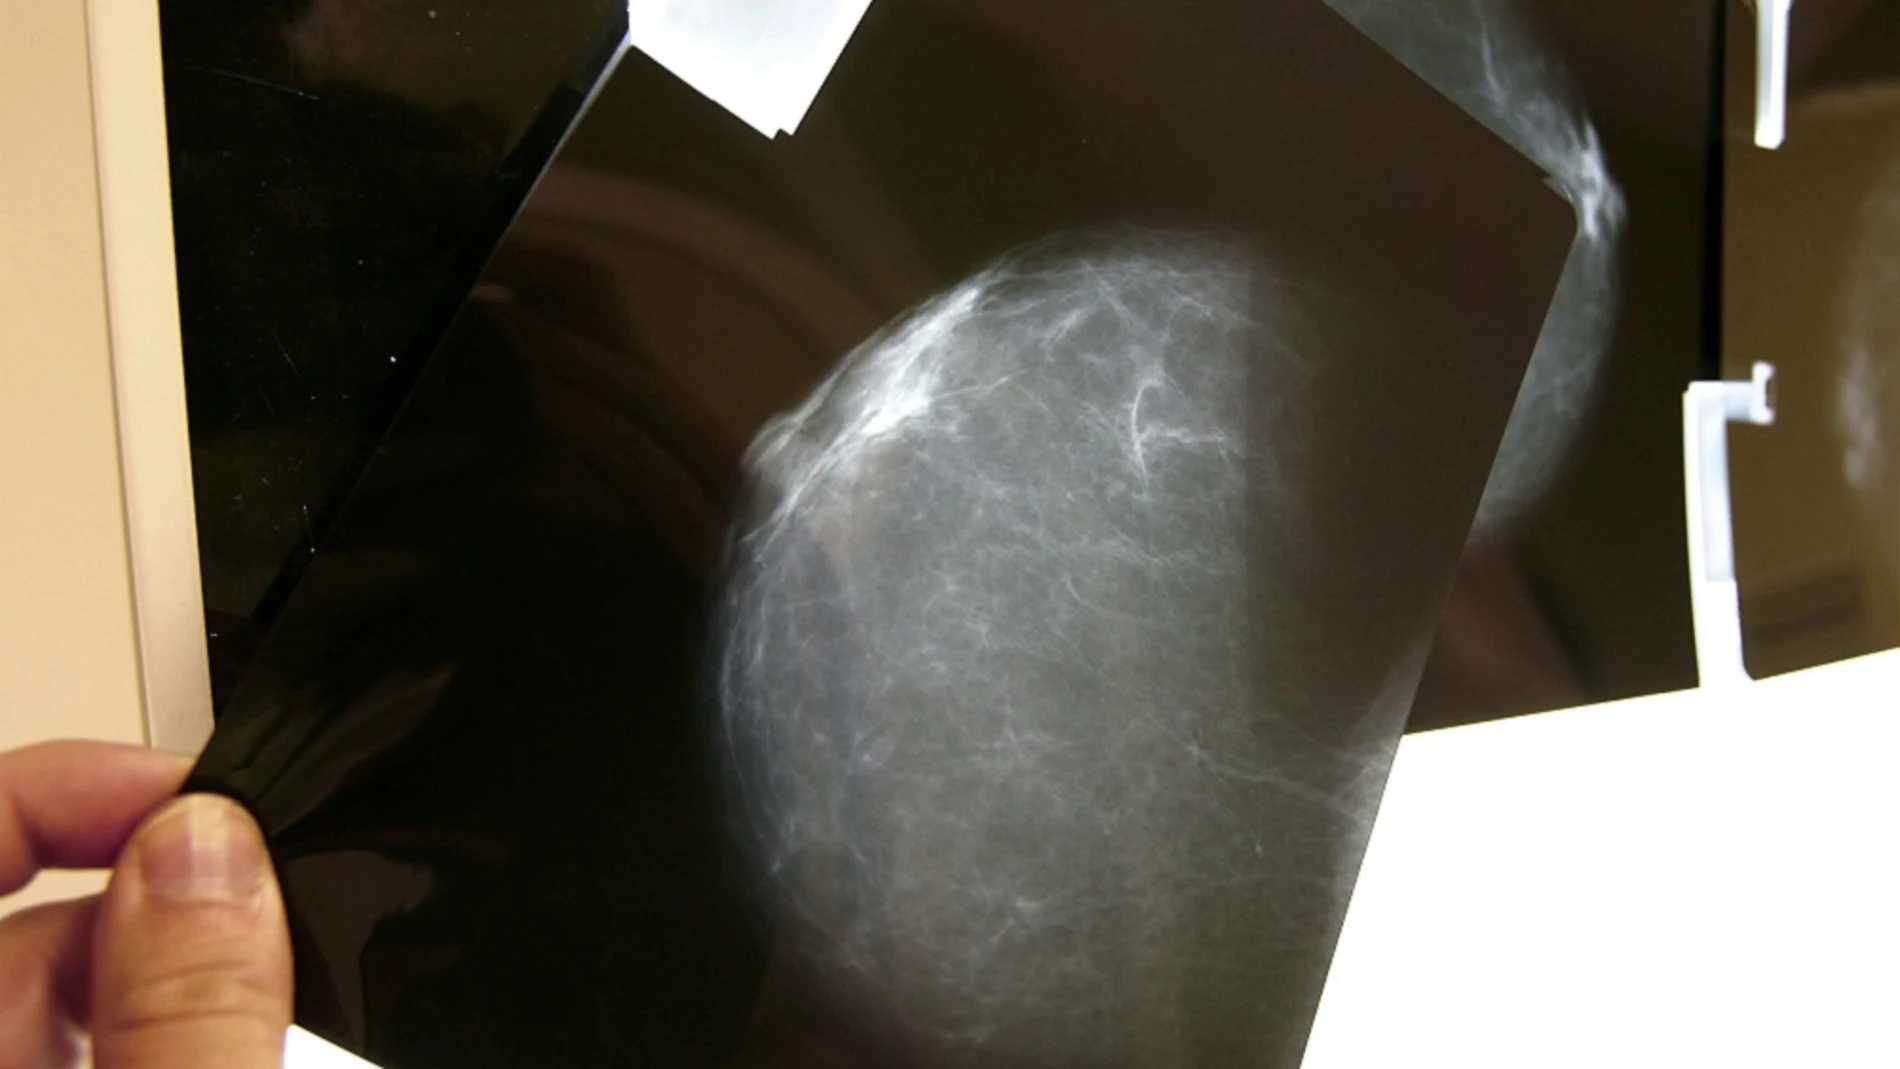 Una prueba radiológica de mama